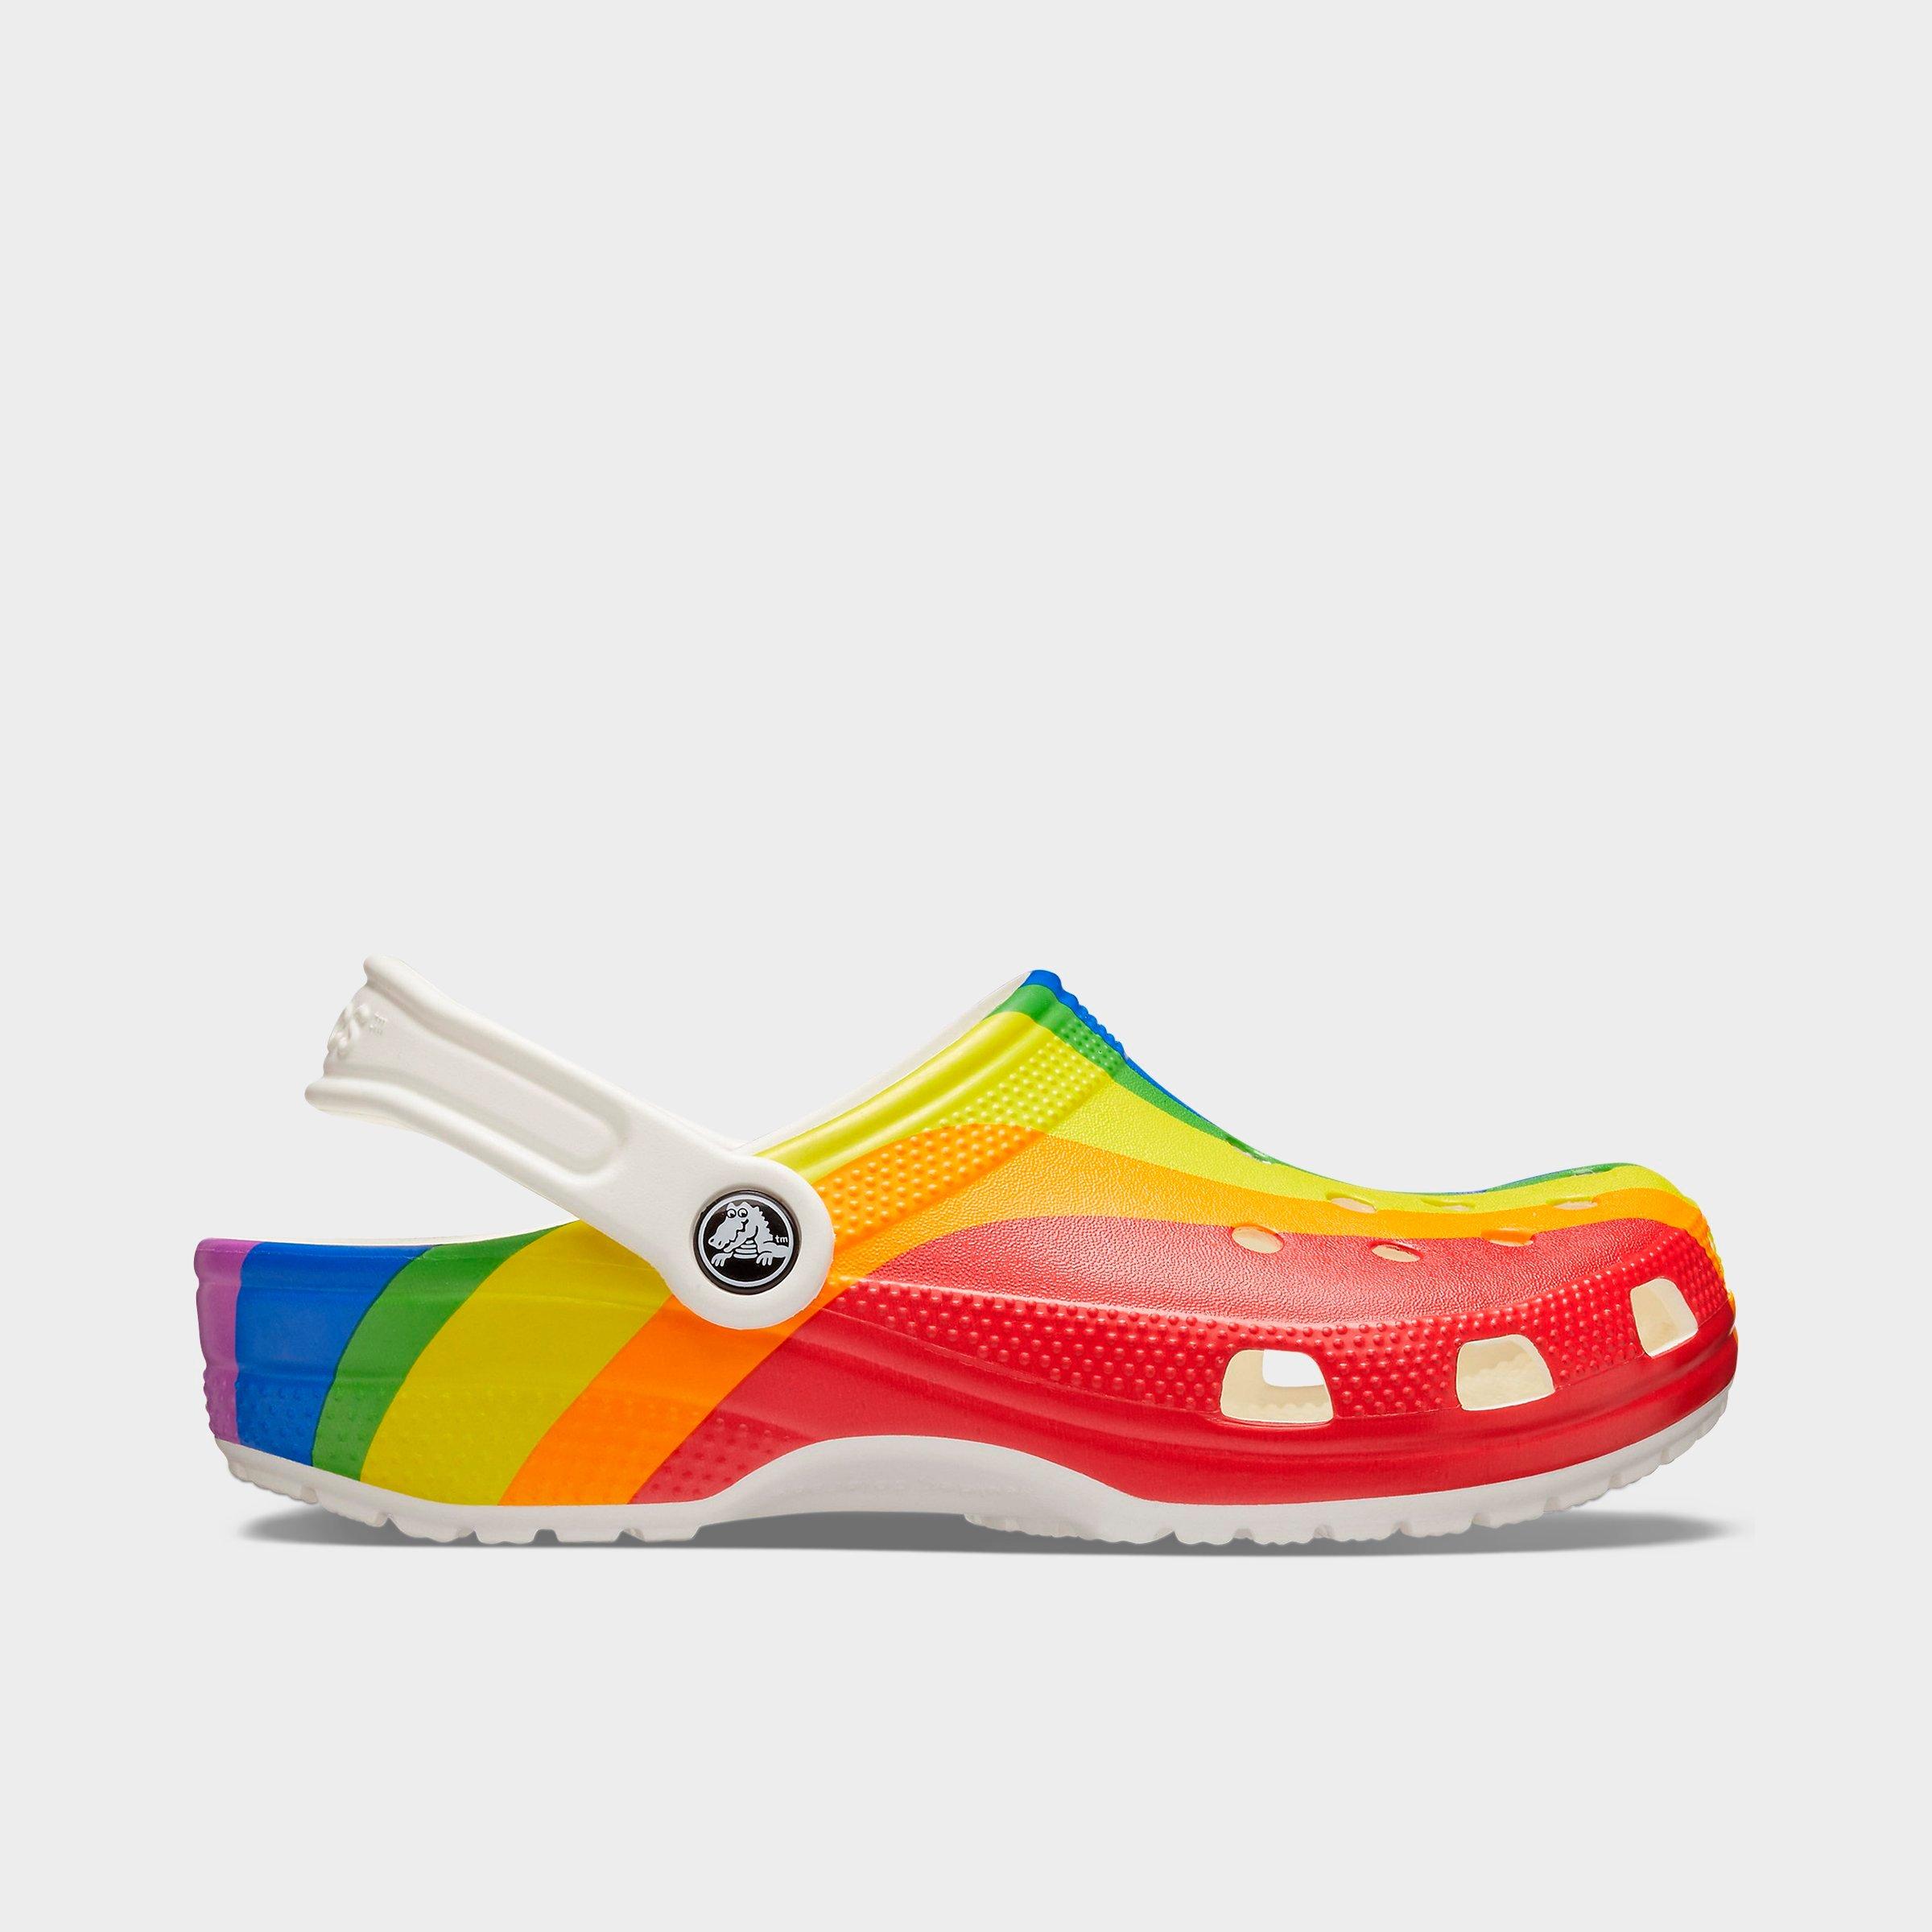 rainbow crocs with charms